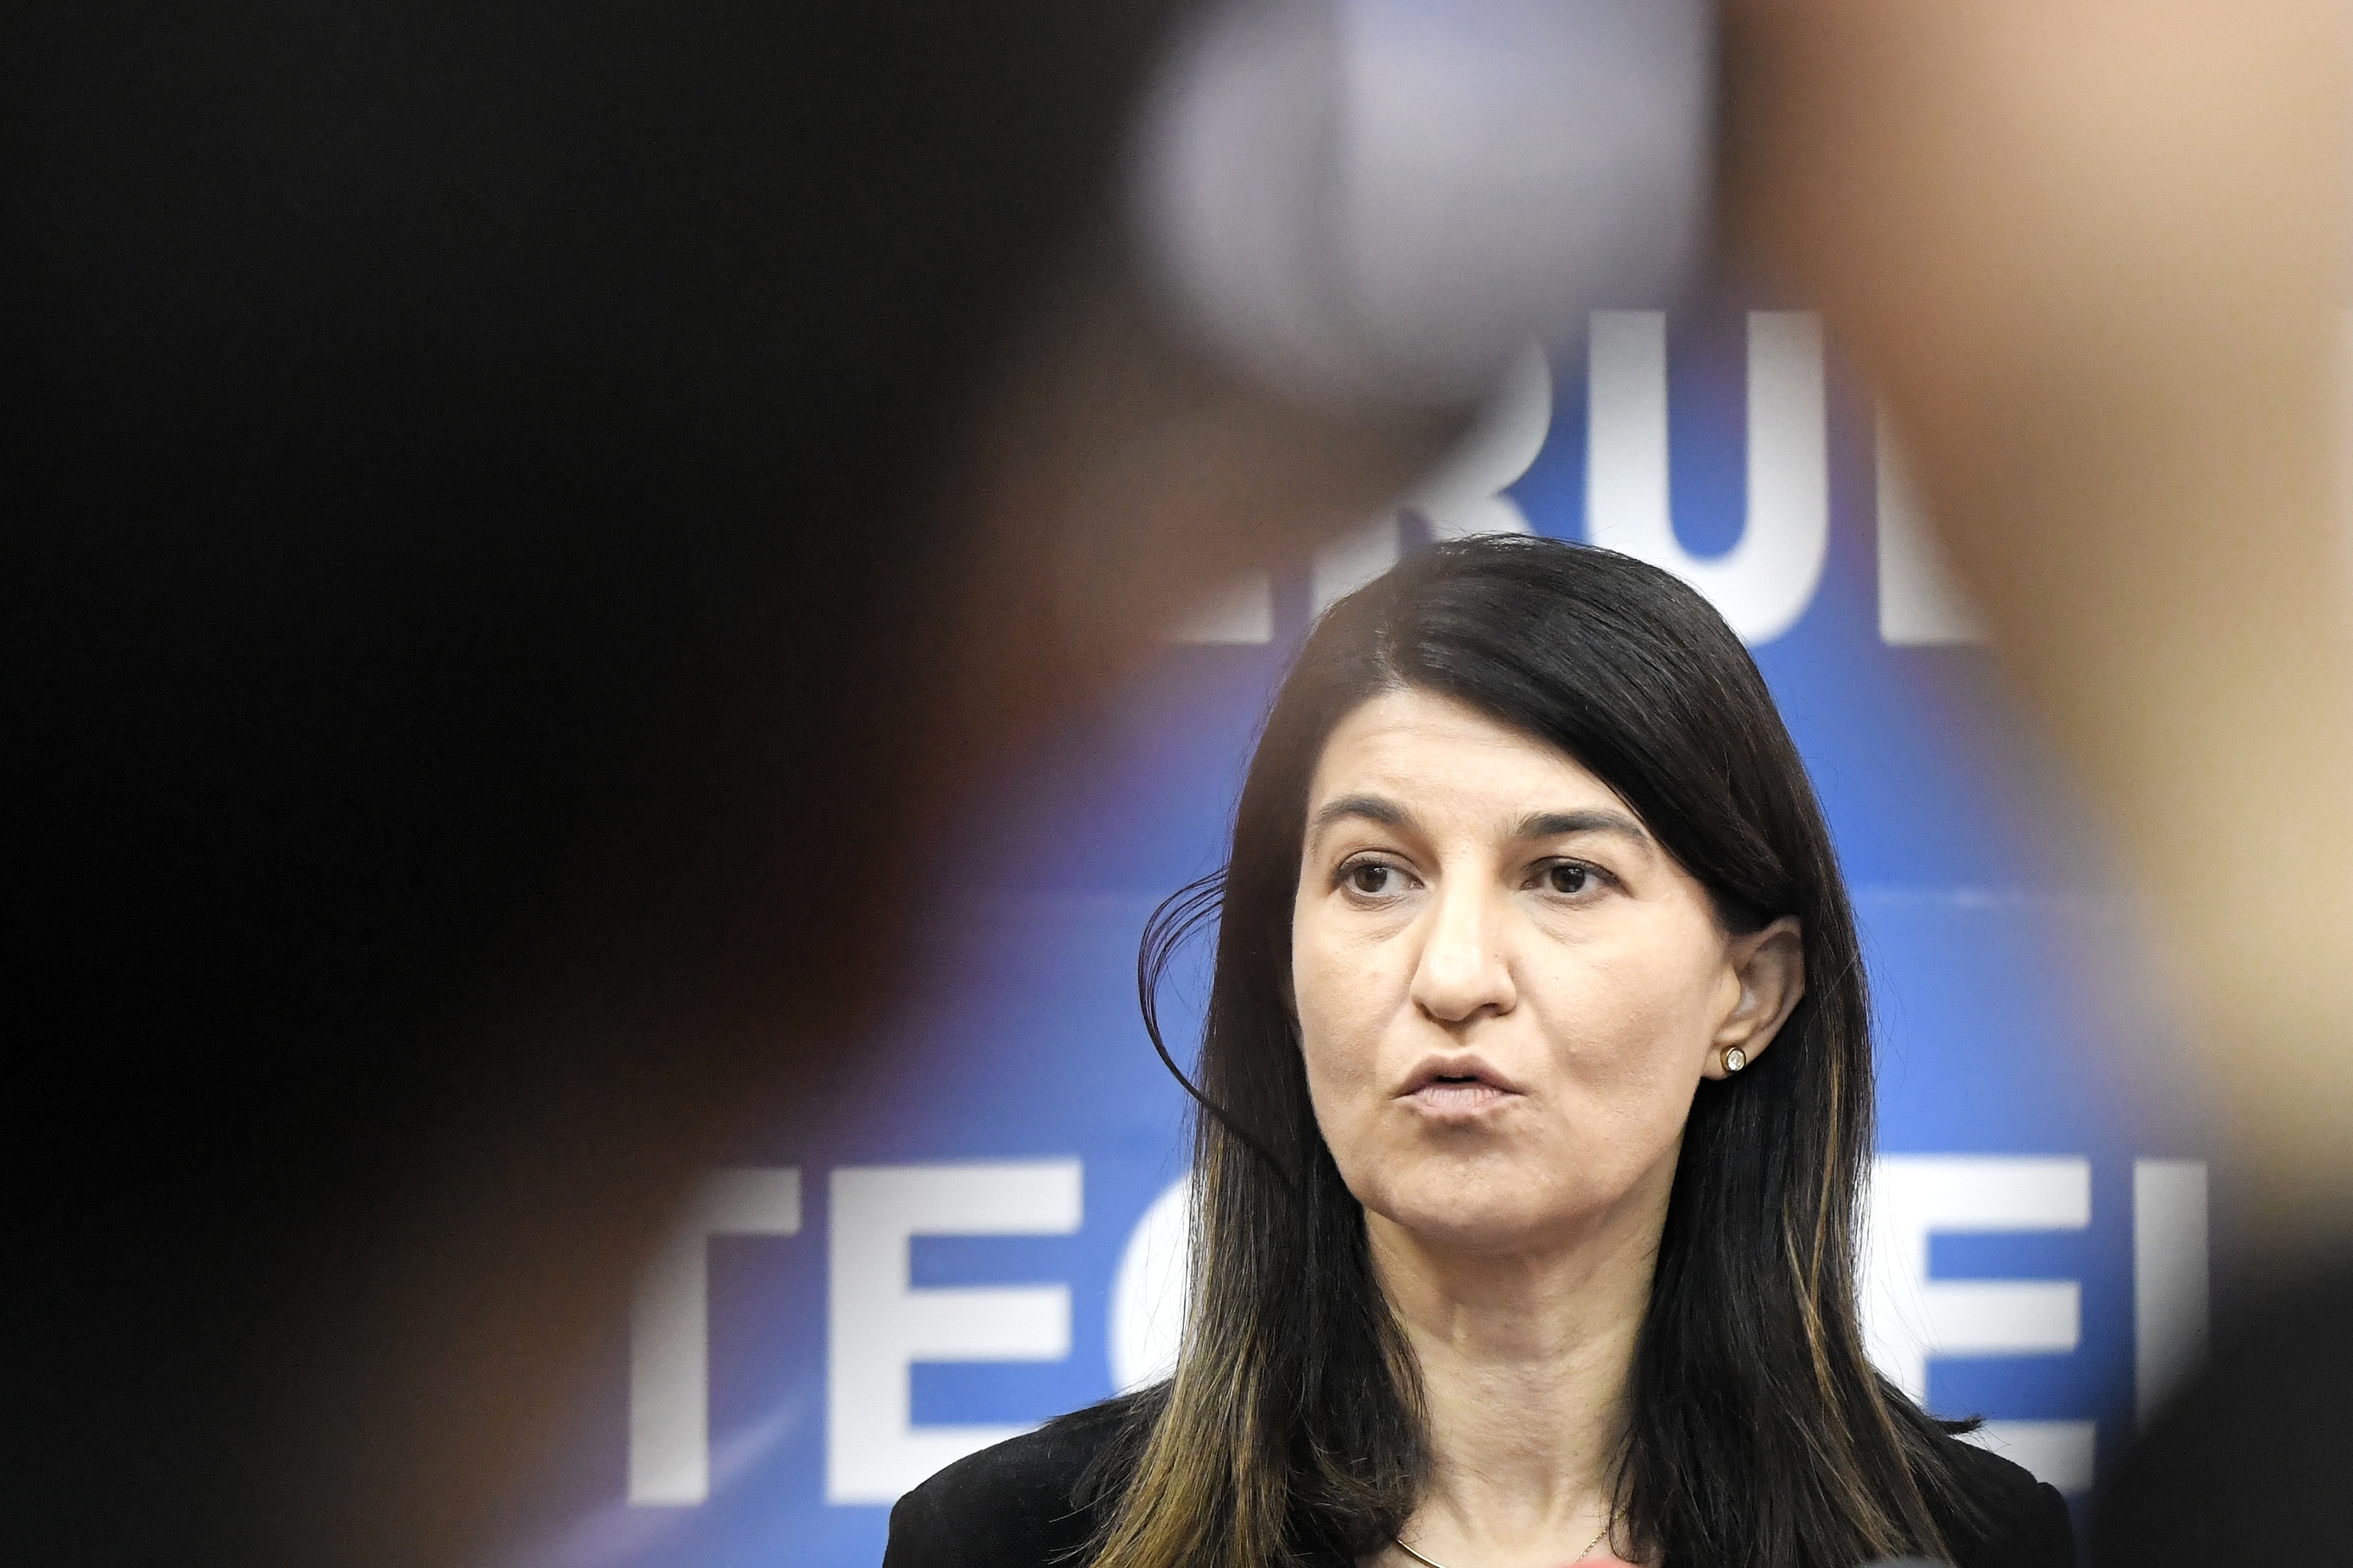 Violeta Alexandru, ministrul Muncii, cere Guvernului peste 3,2 milioane lei din fondul d rezervă pentru plata salariilor angajaţilor din Inspectoratele Teritoriale de Muncă